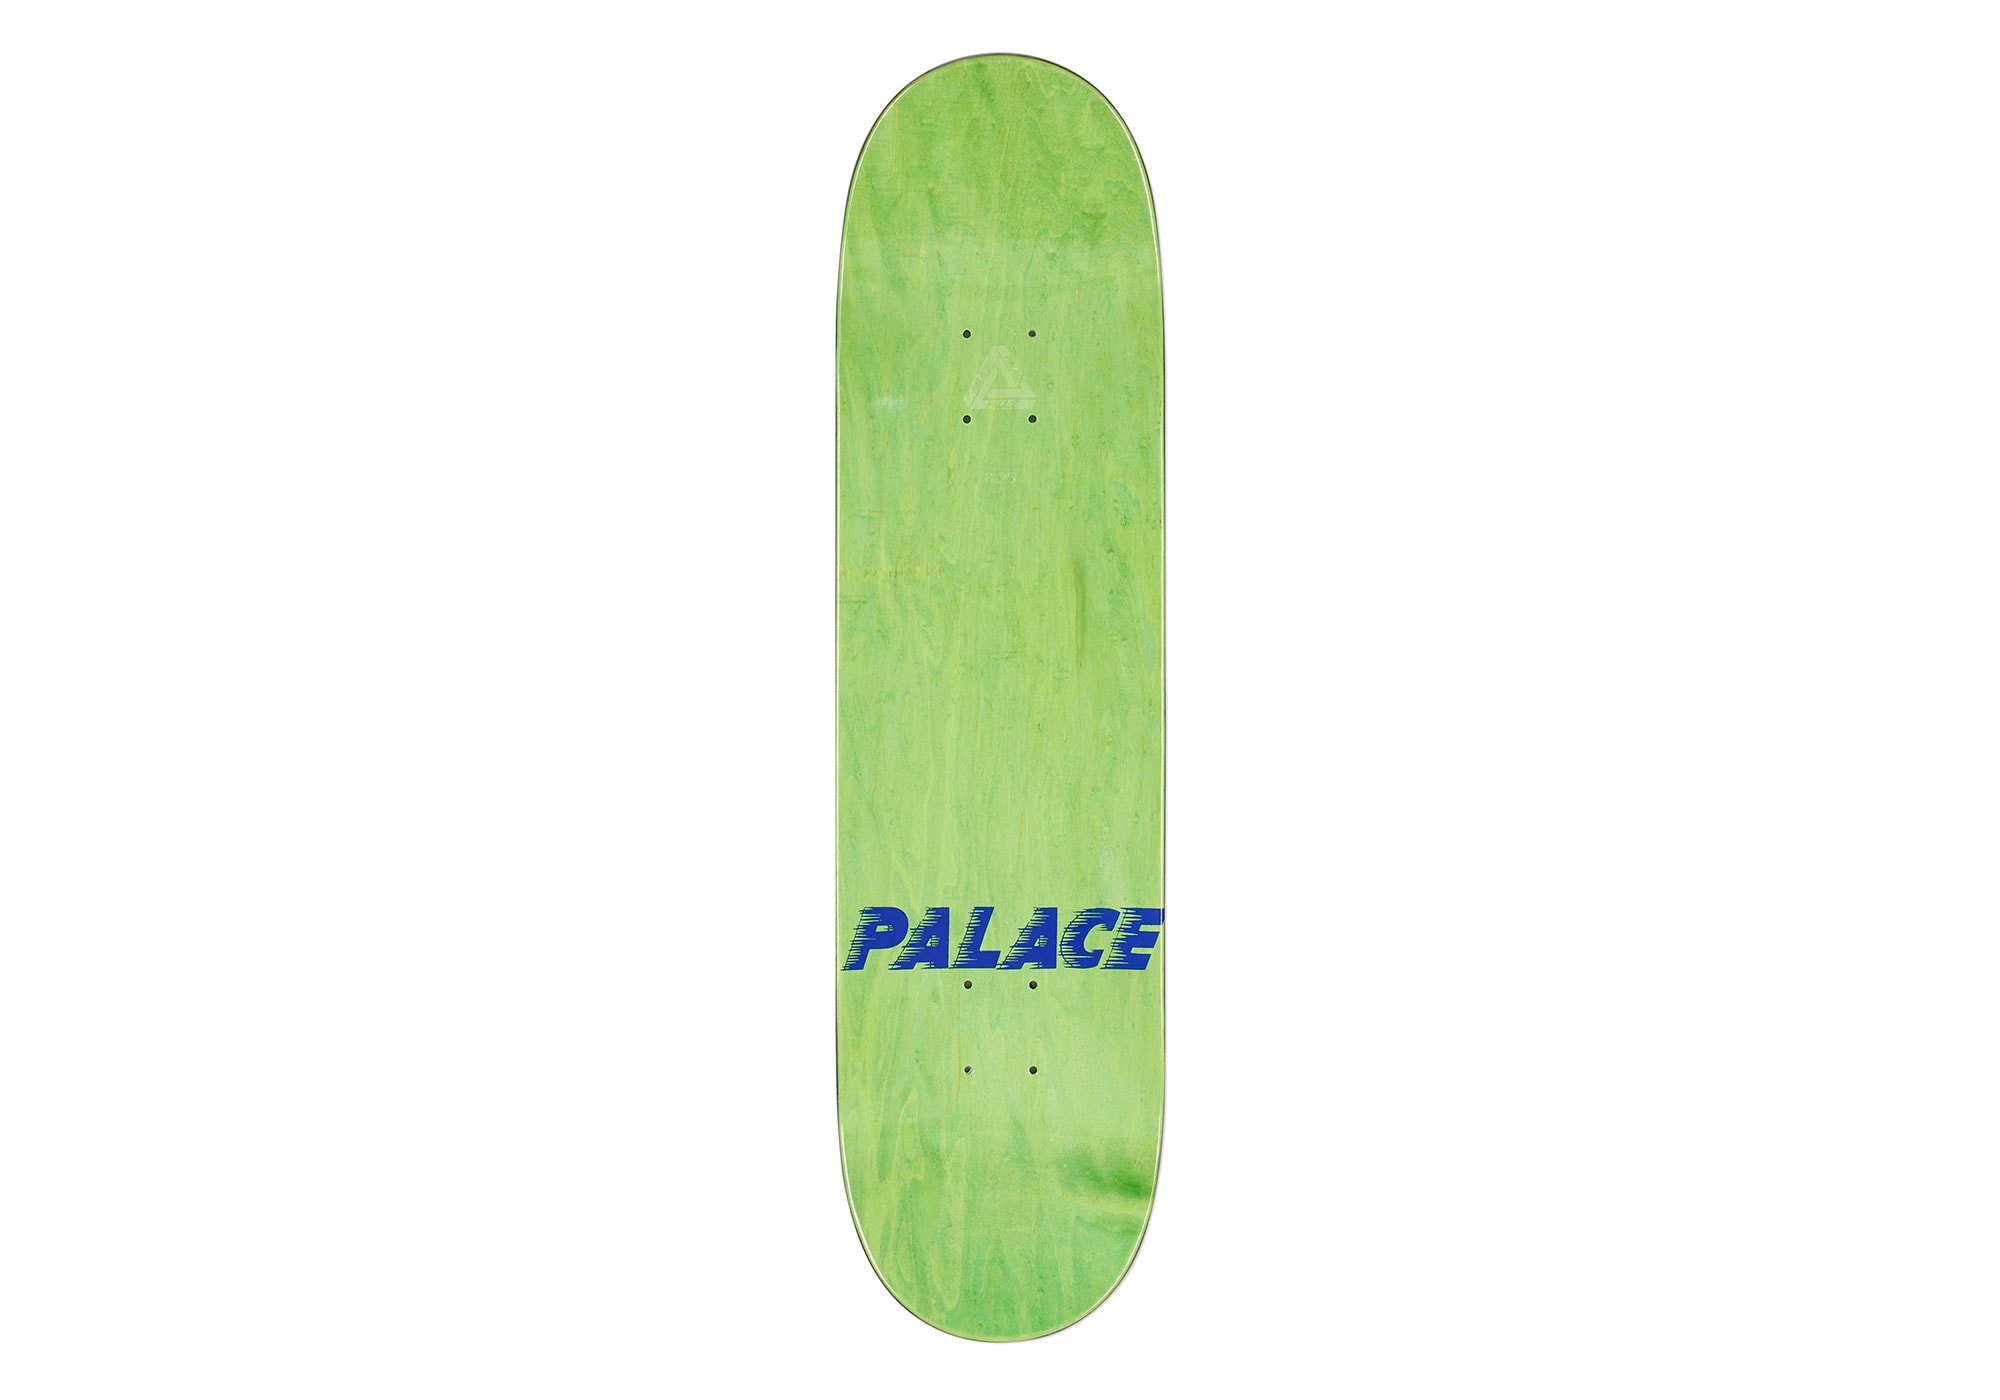 Palace Skateboards 2020 秋季系列配件單品一覽